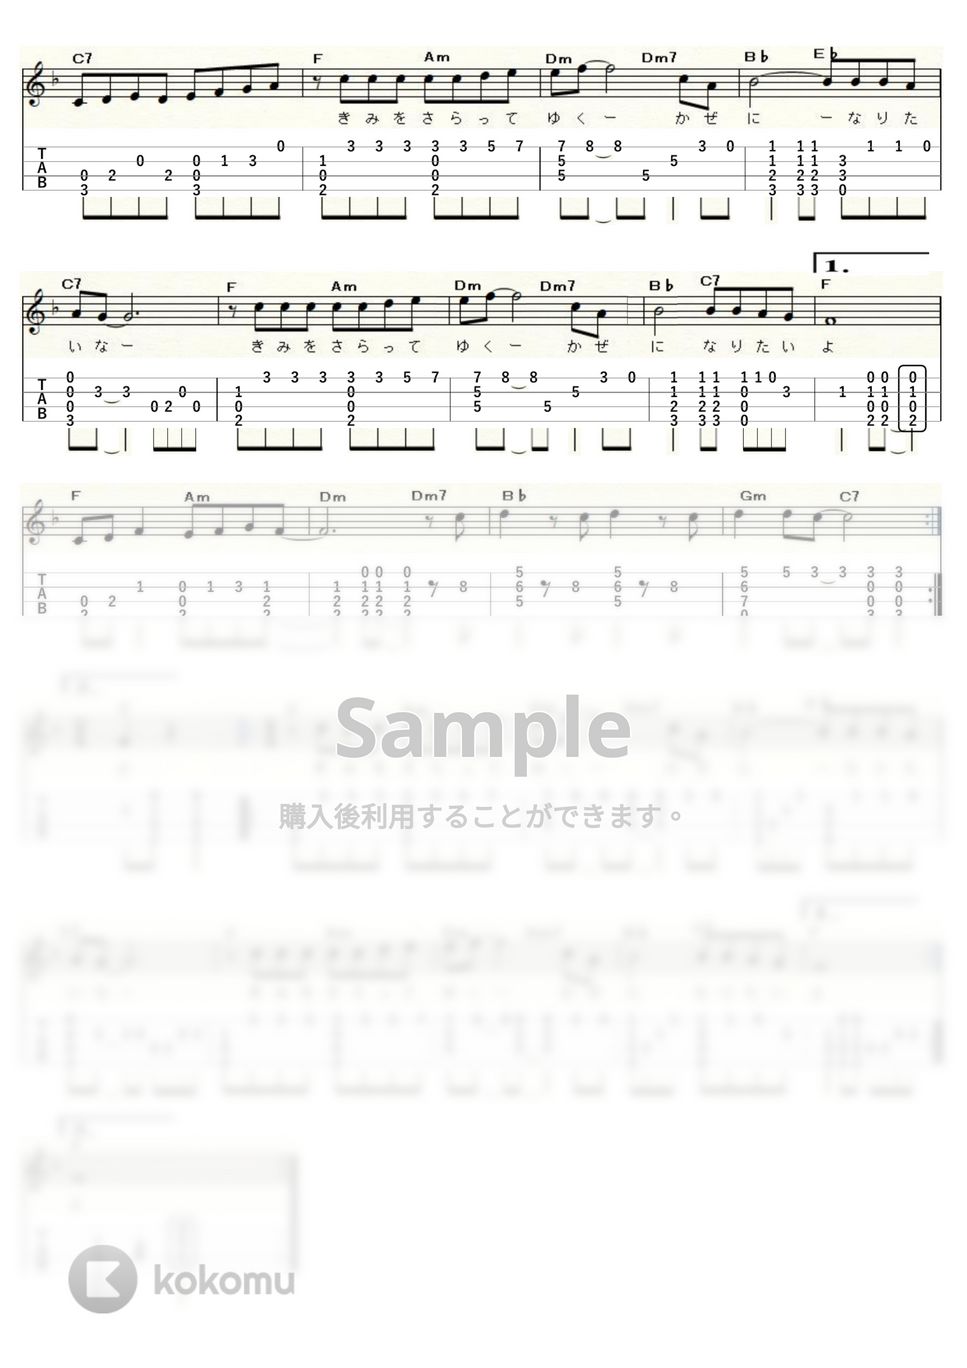 チューリップ - 夏色のおもいで (ｳｸﾚﾚｿﾛ/High-G・Low-G/中級) by ukulelepapa